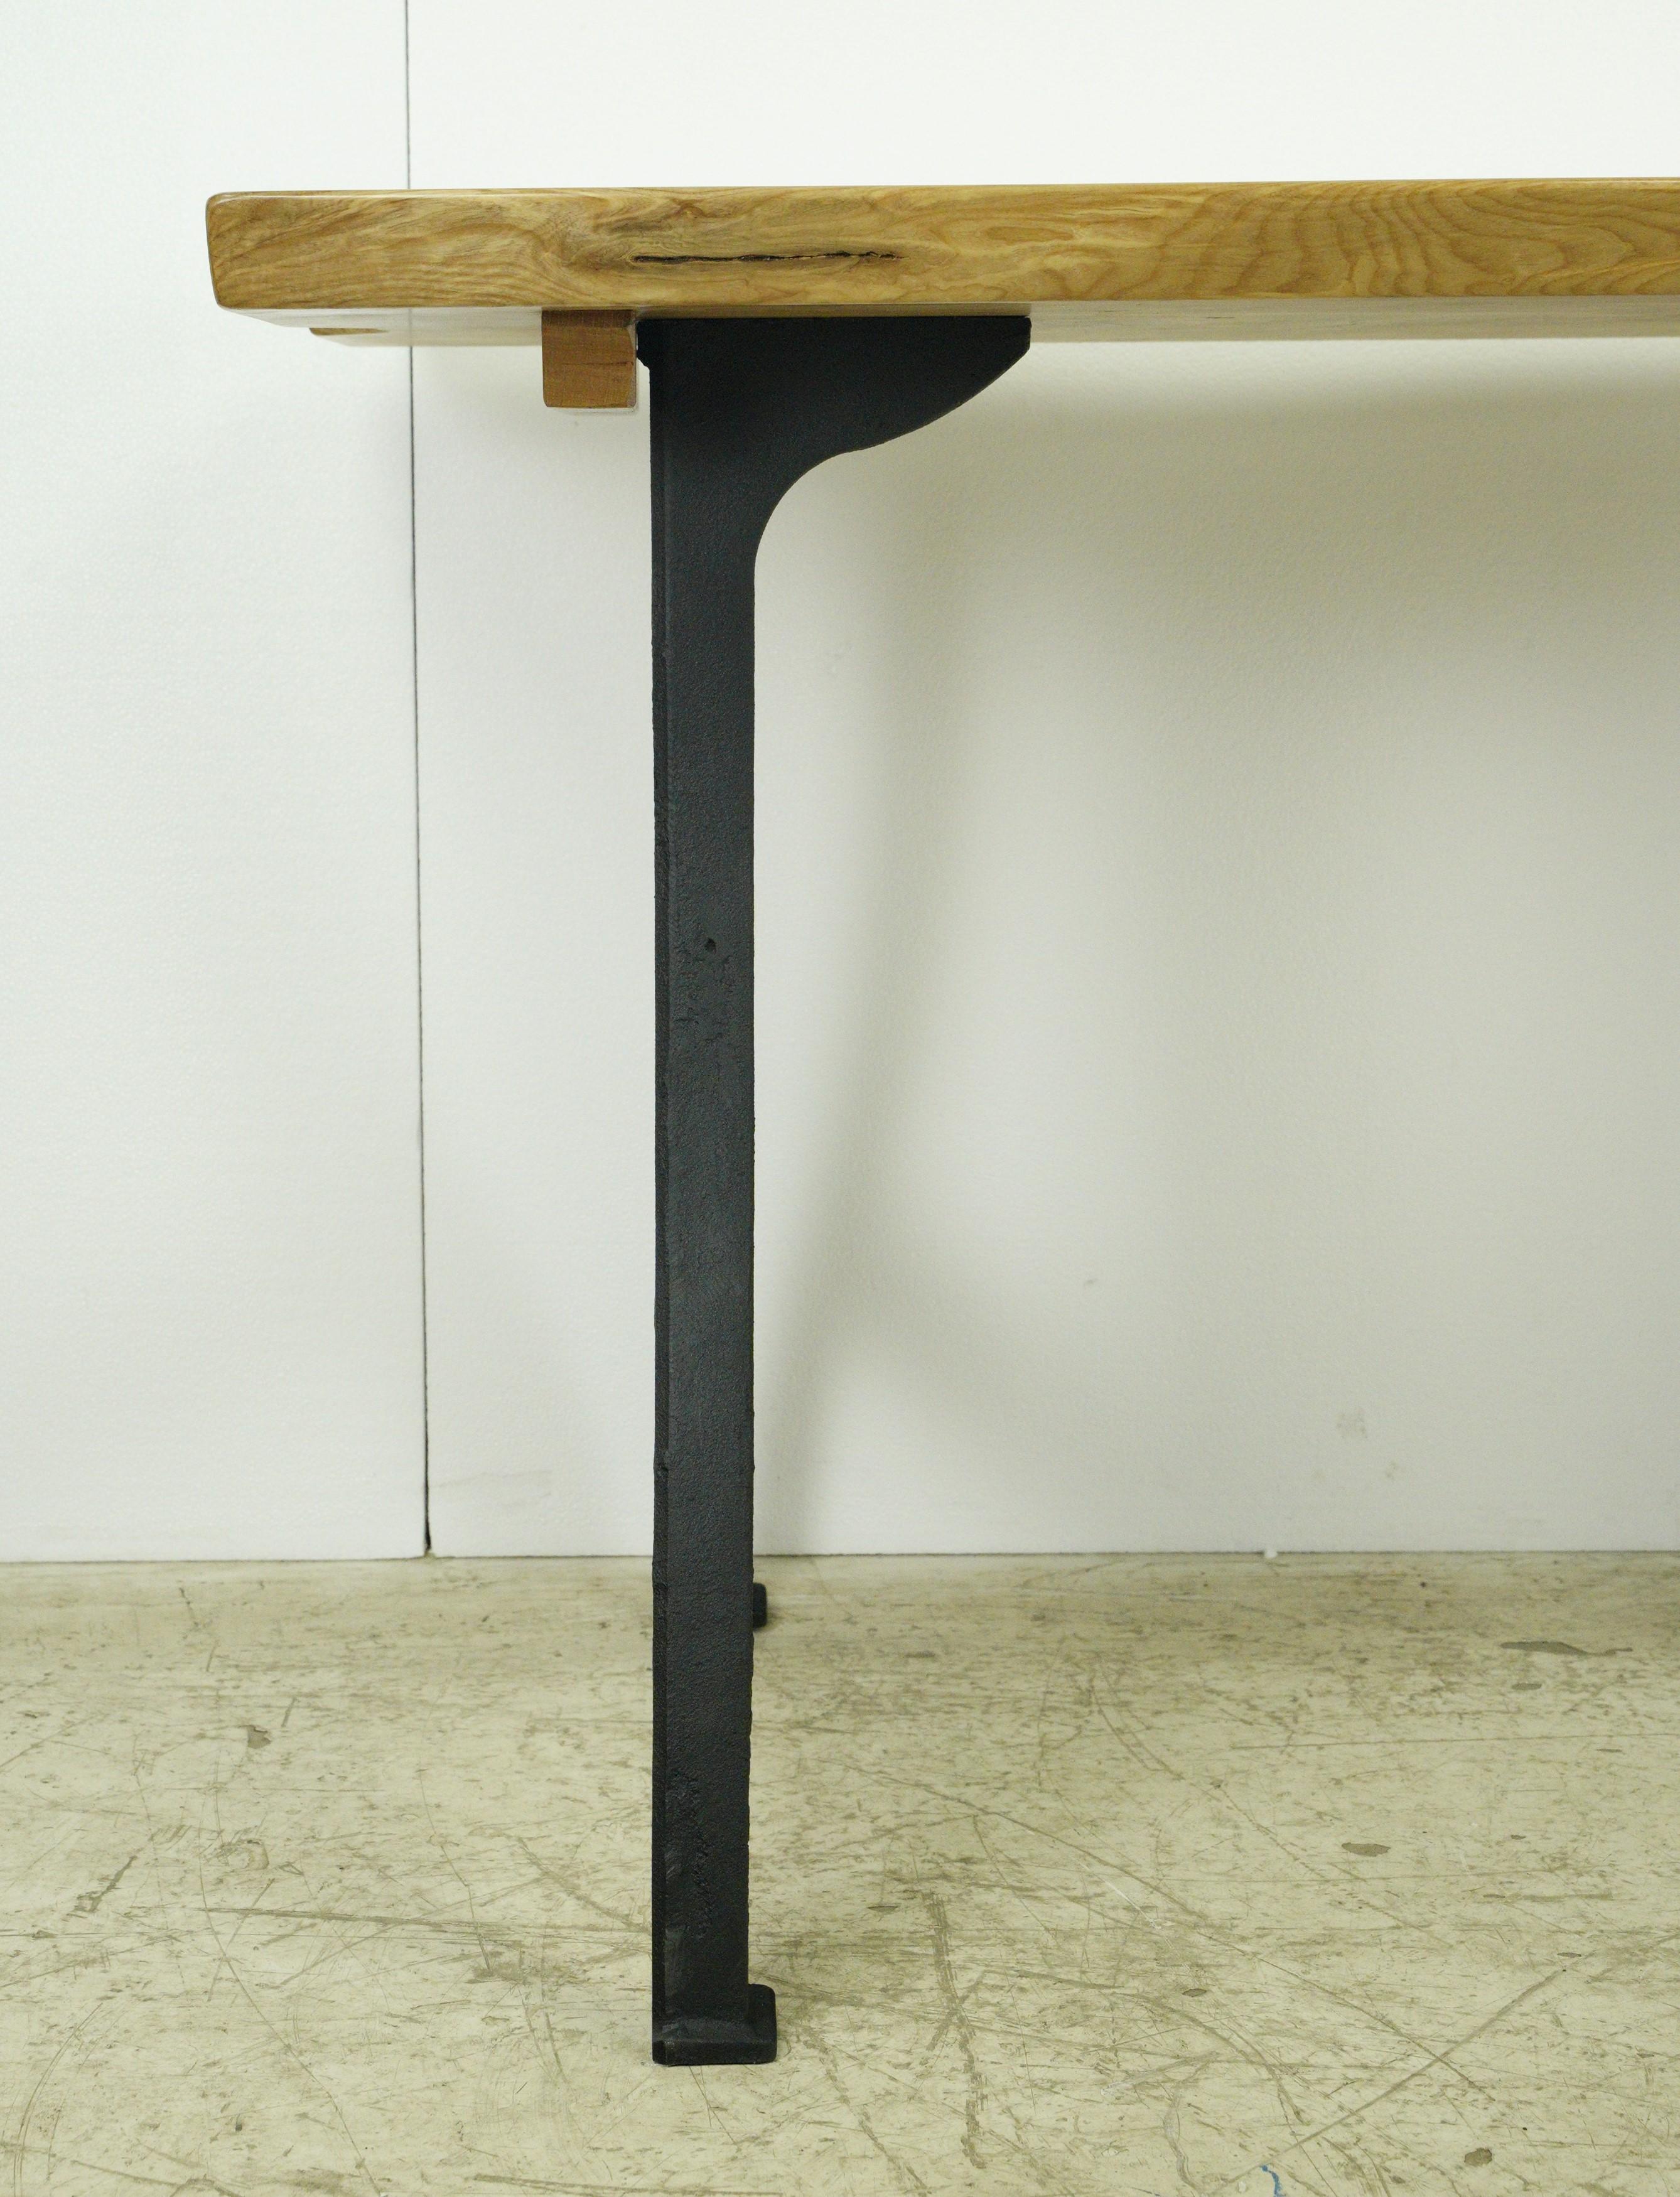 Dieser handgefertigte Esstisch ist ein bemerkenswertes Möbelstück, das natürliche Schönheit mit industriellen Designelementen verbindet. Die lebende Ahornplatte bringt die rohe, lebendige Kante des Holzes zur Geltung. Die Verwendung von New Yorker